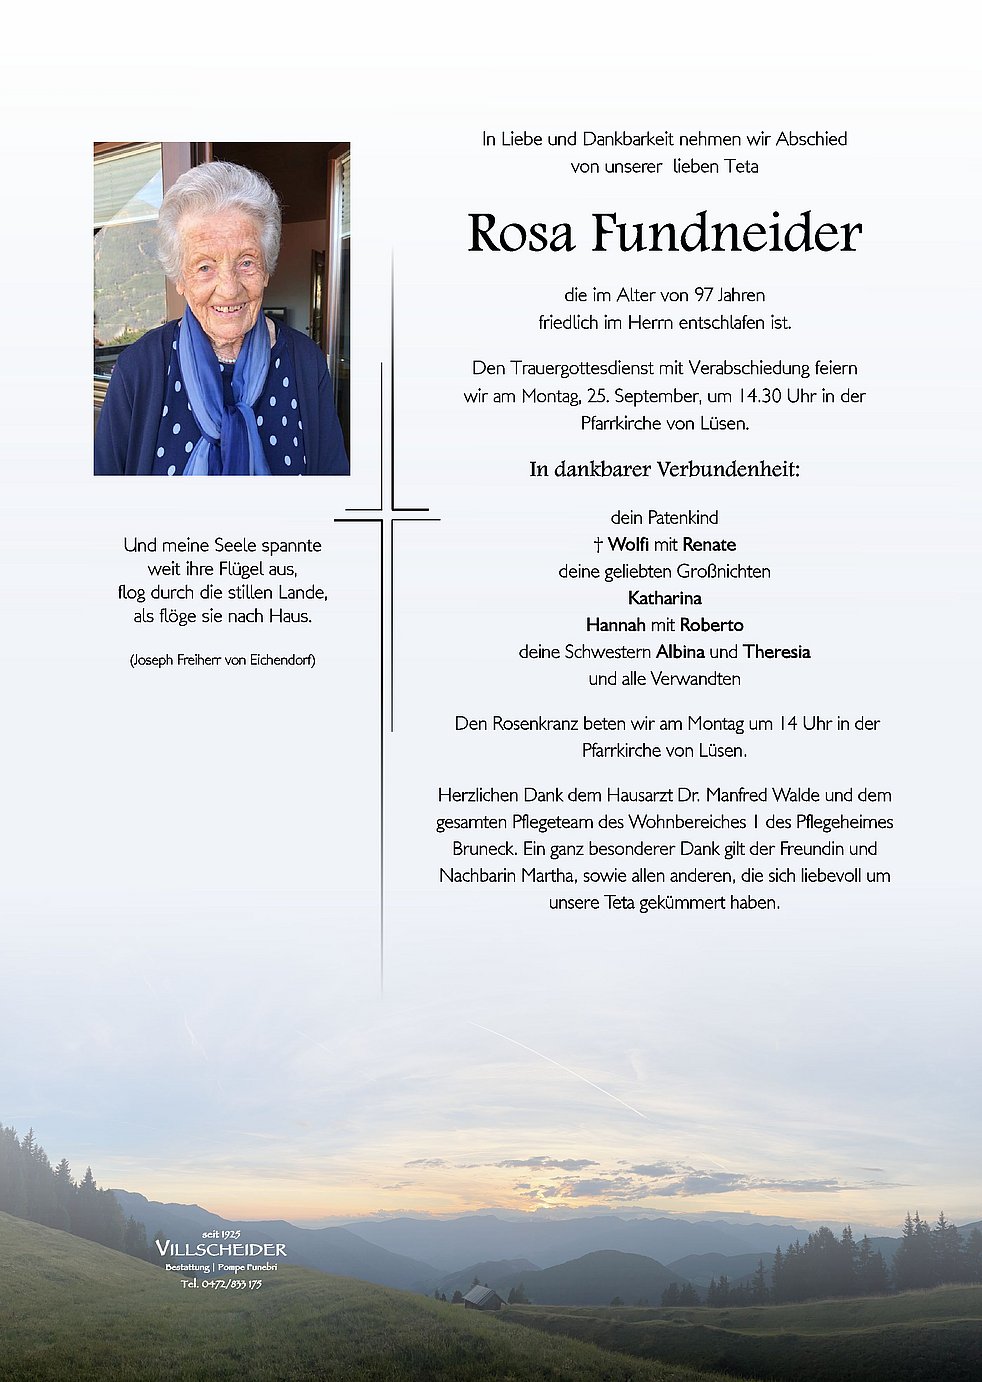 Rosa Fundneider Aus Bruneck Trauerhilfeit Das Südtiroler Gedenkportal 